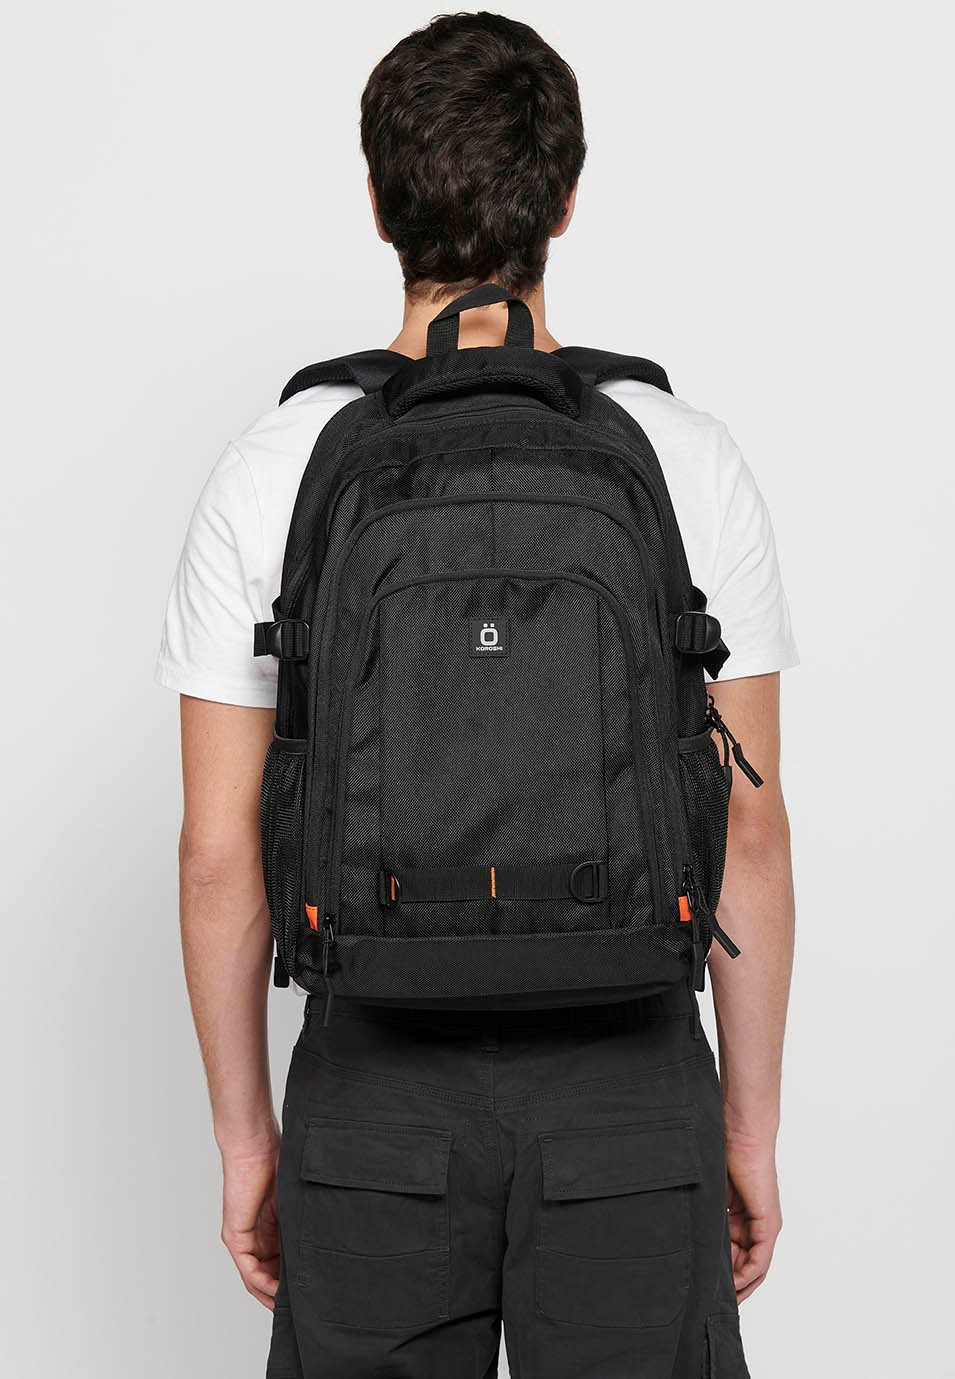 Koröshi-Rucksack mit drei Reißverschlussfächern, eines für einen Laptop, und schwarzen Innentaschen 7